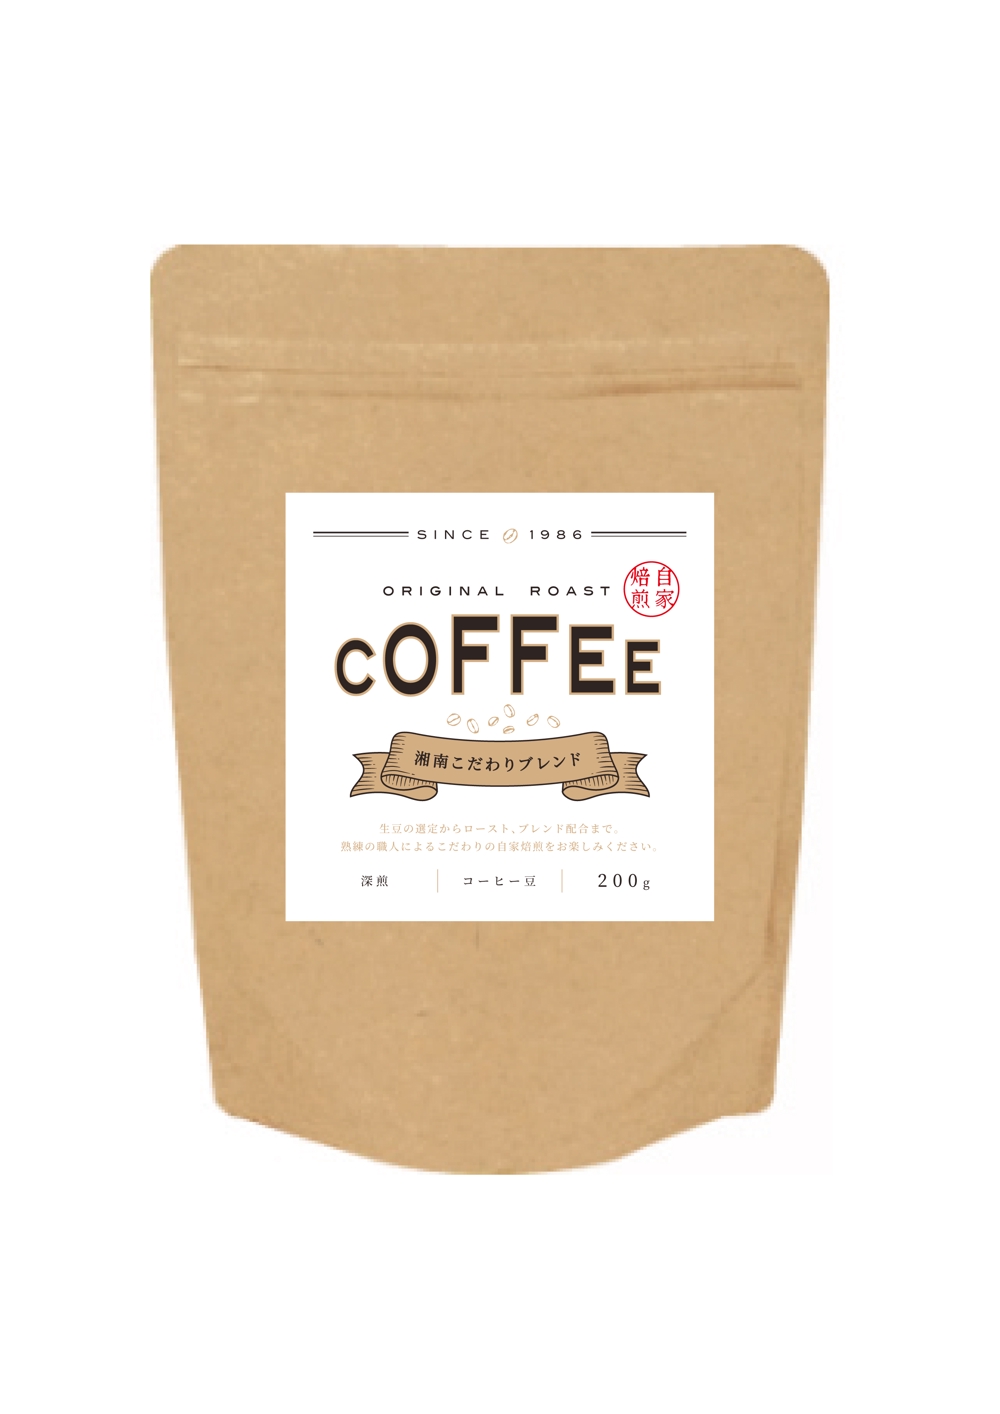 コーヒー豆の袋に貼り付ける商品ラベル